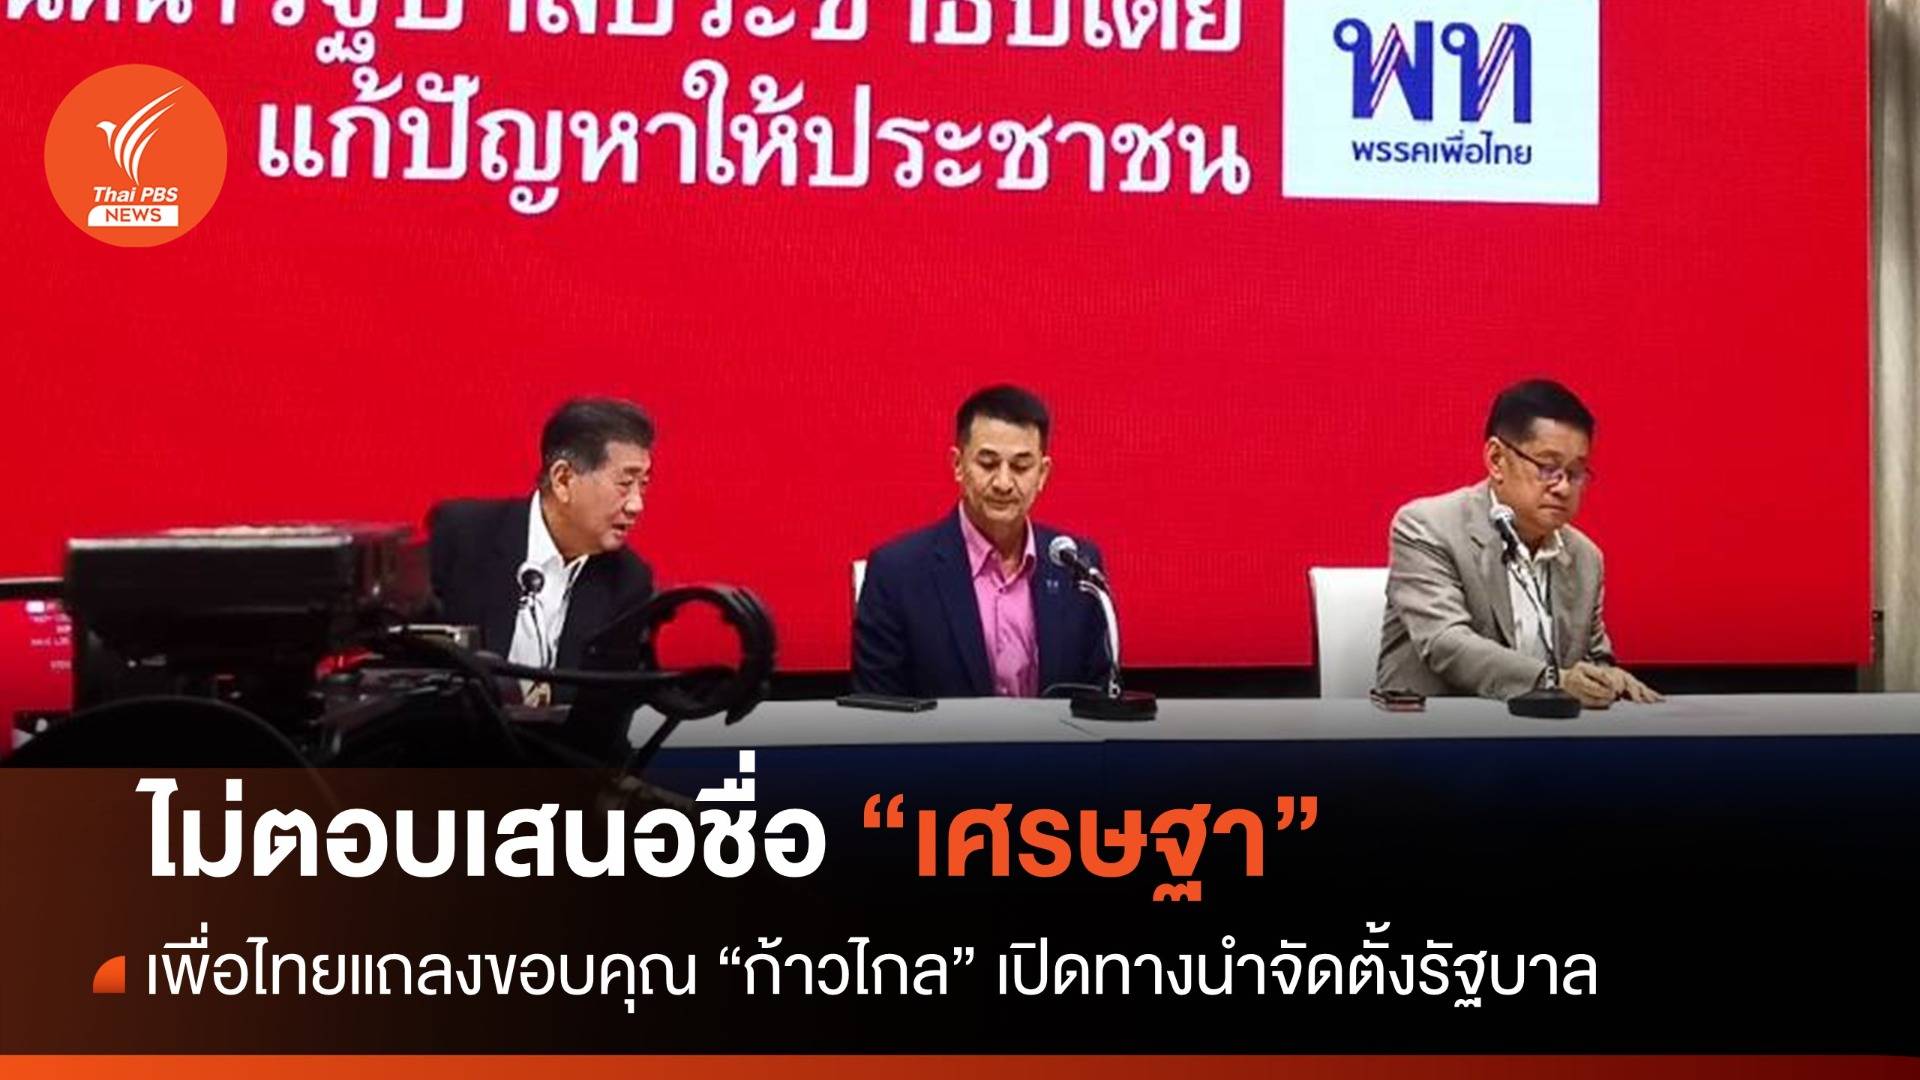 เพื่อไทยขอบคุณก้าวไกลเปิดทางนำตั้งรัฐบาล ไม่ตอบชง "เศรษฐา"